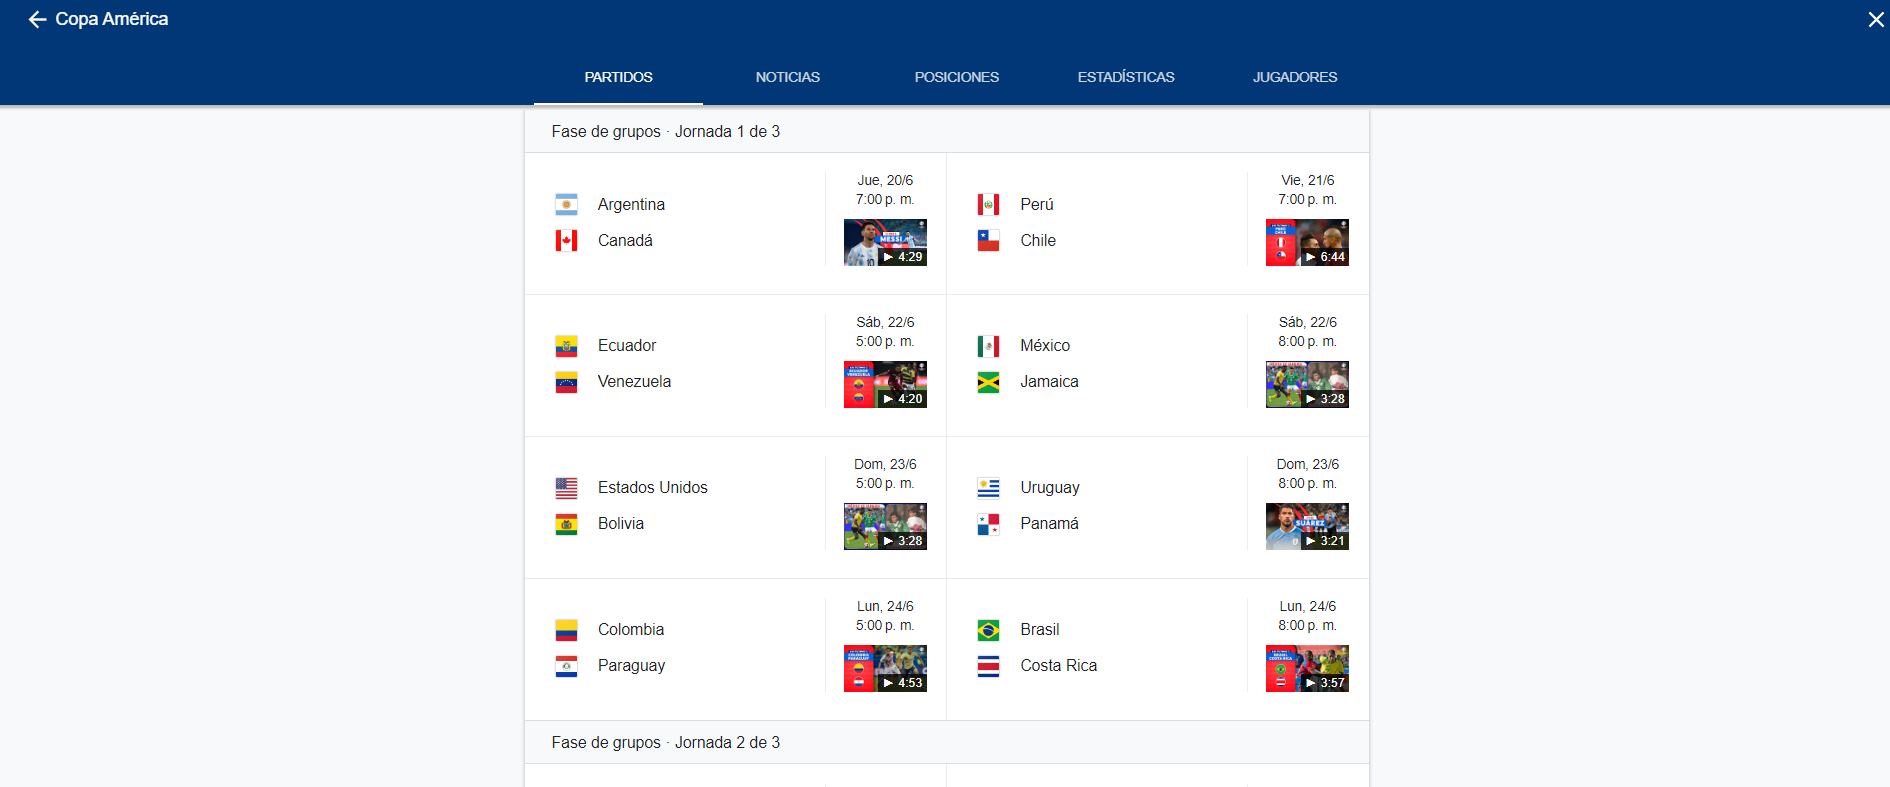 Google proporciona información en tiempo real sobre la Copa América. (Google)